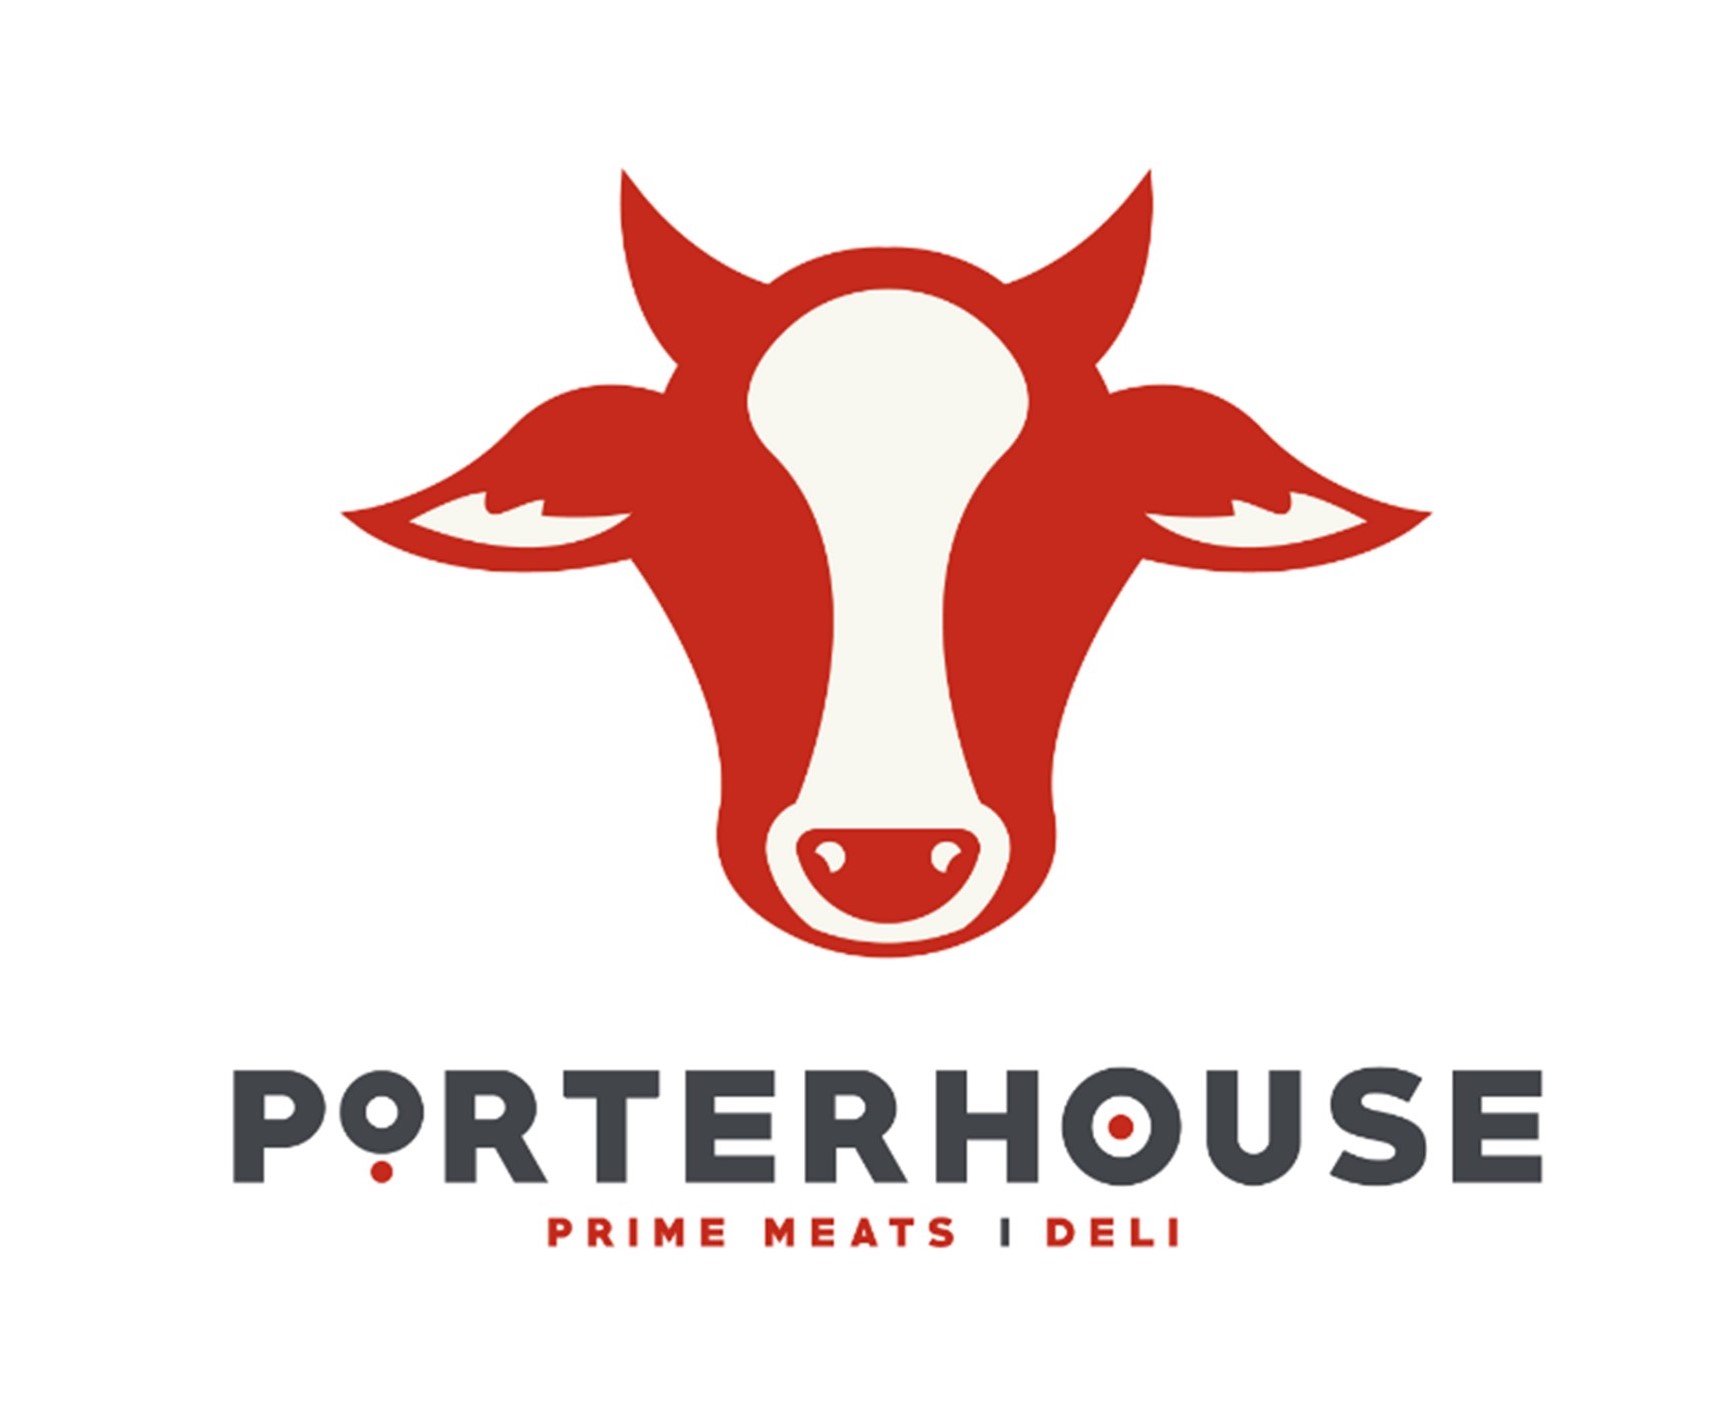 Porterhouse Prime Meats